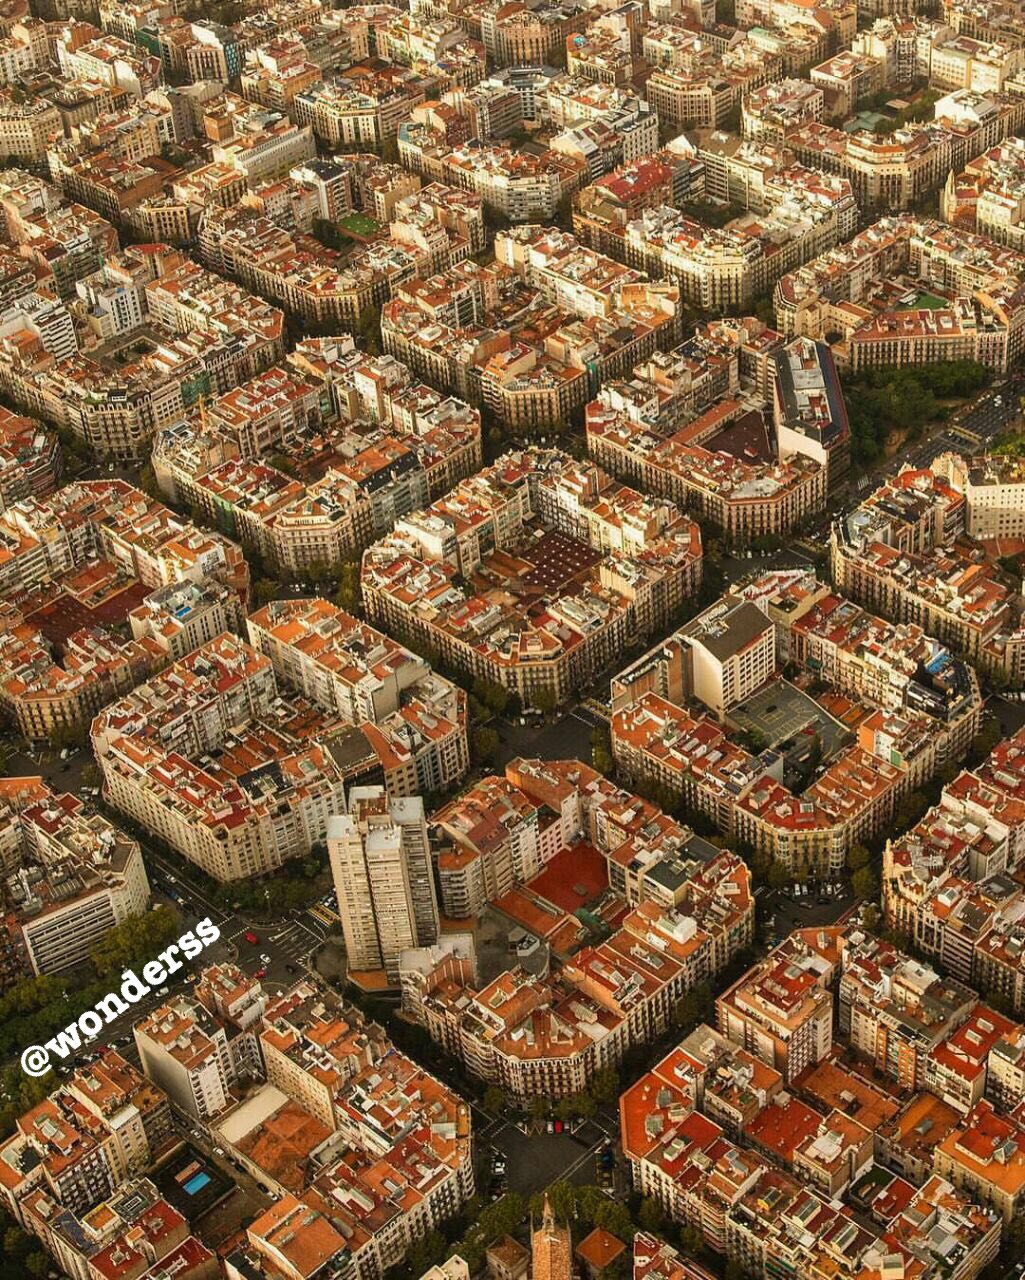 عکس زیبا از شهر سازی شیک و منظم شهر بارسلون در اسپانیا